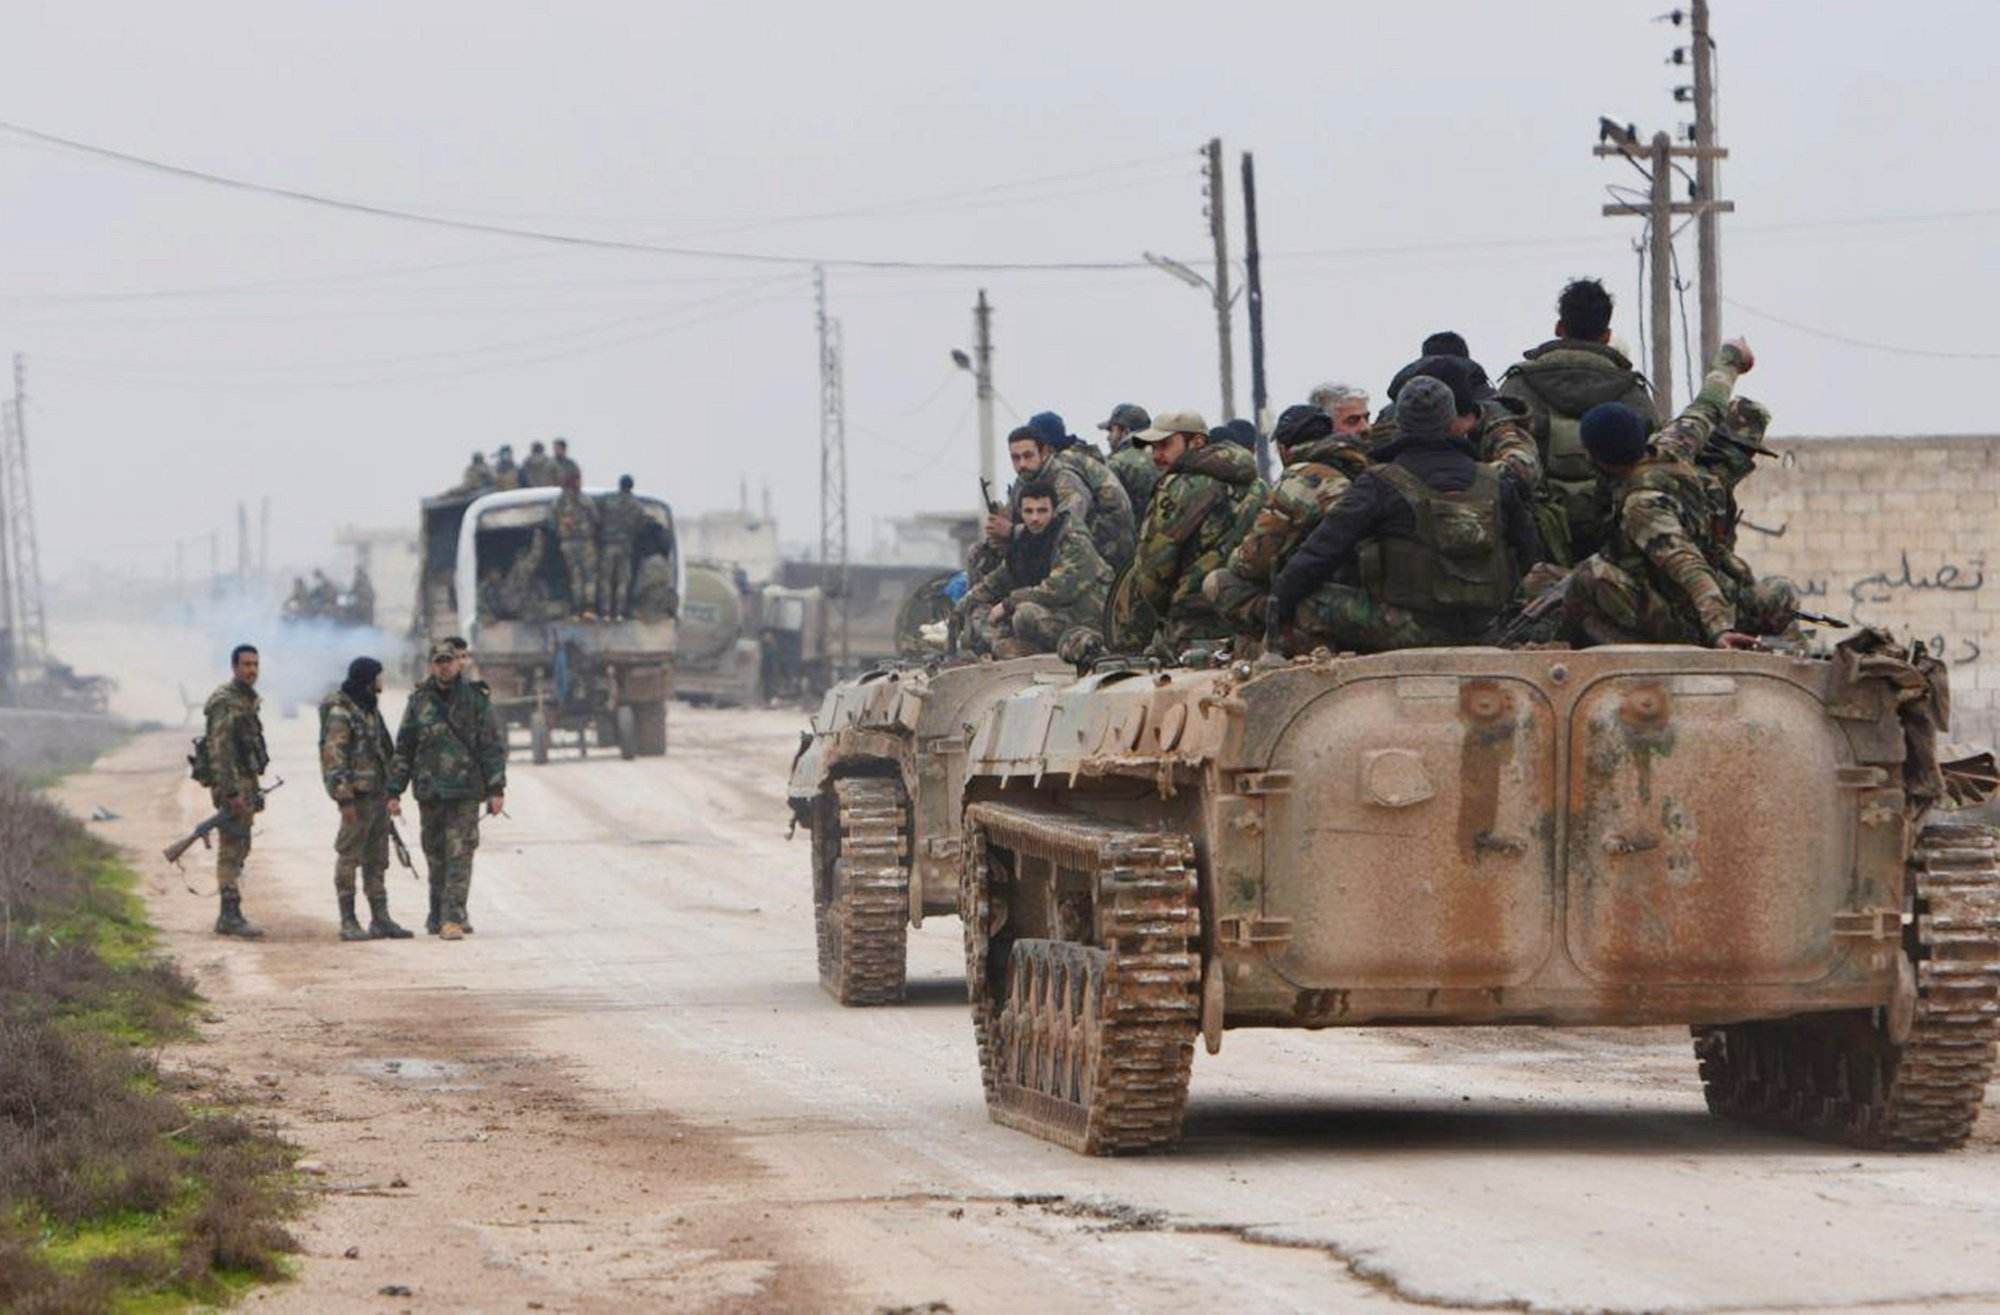 土耳其心有不甘,400多辆战车开进叙利亚,战争不可避免